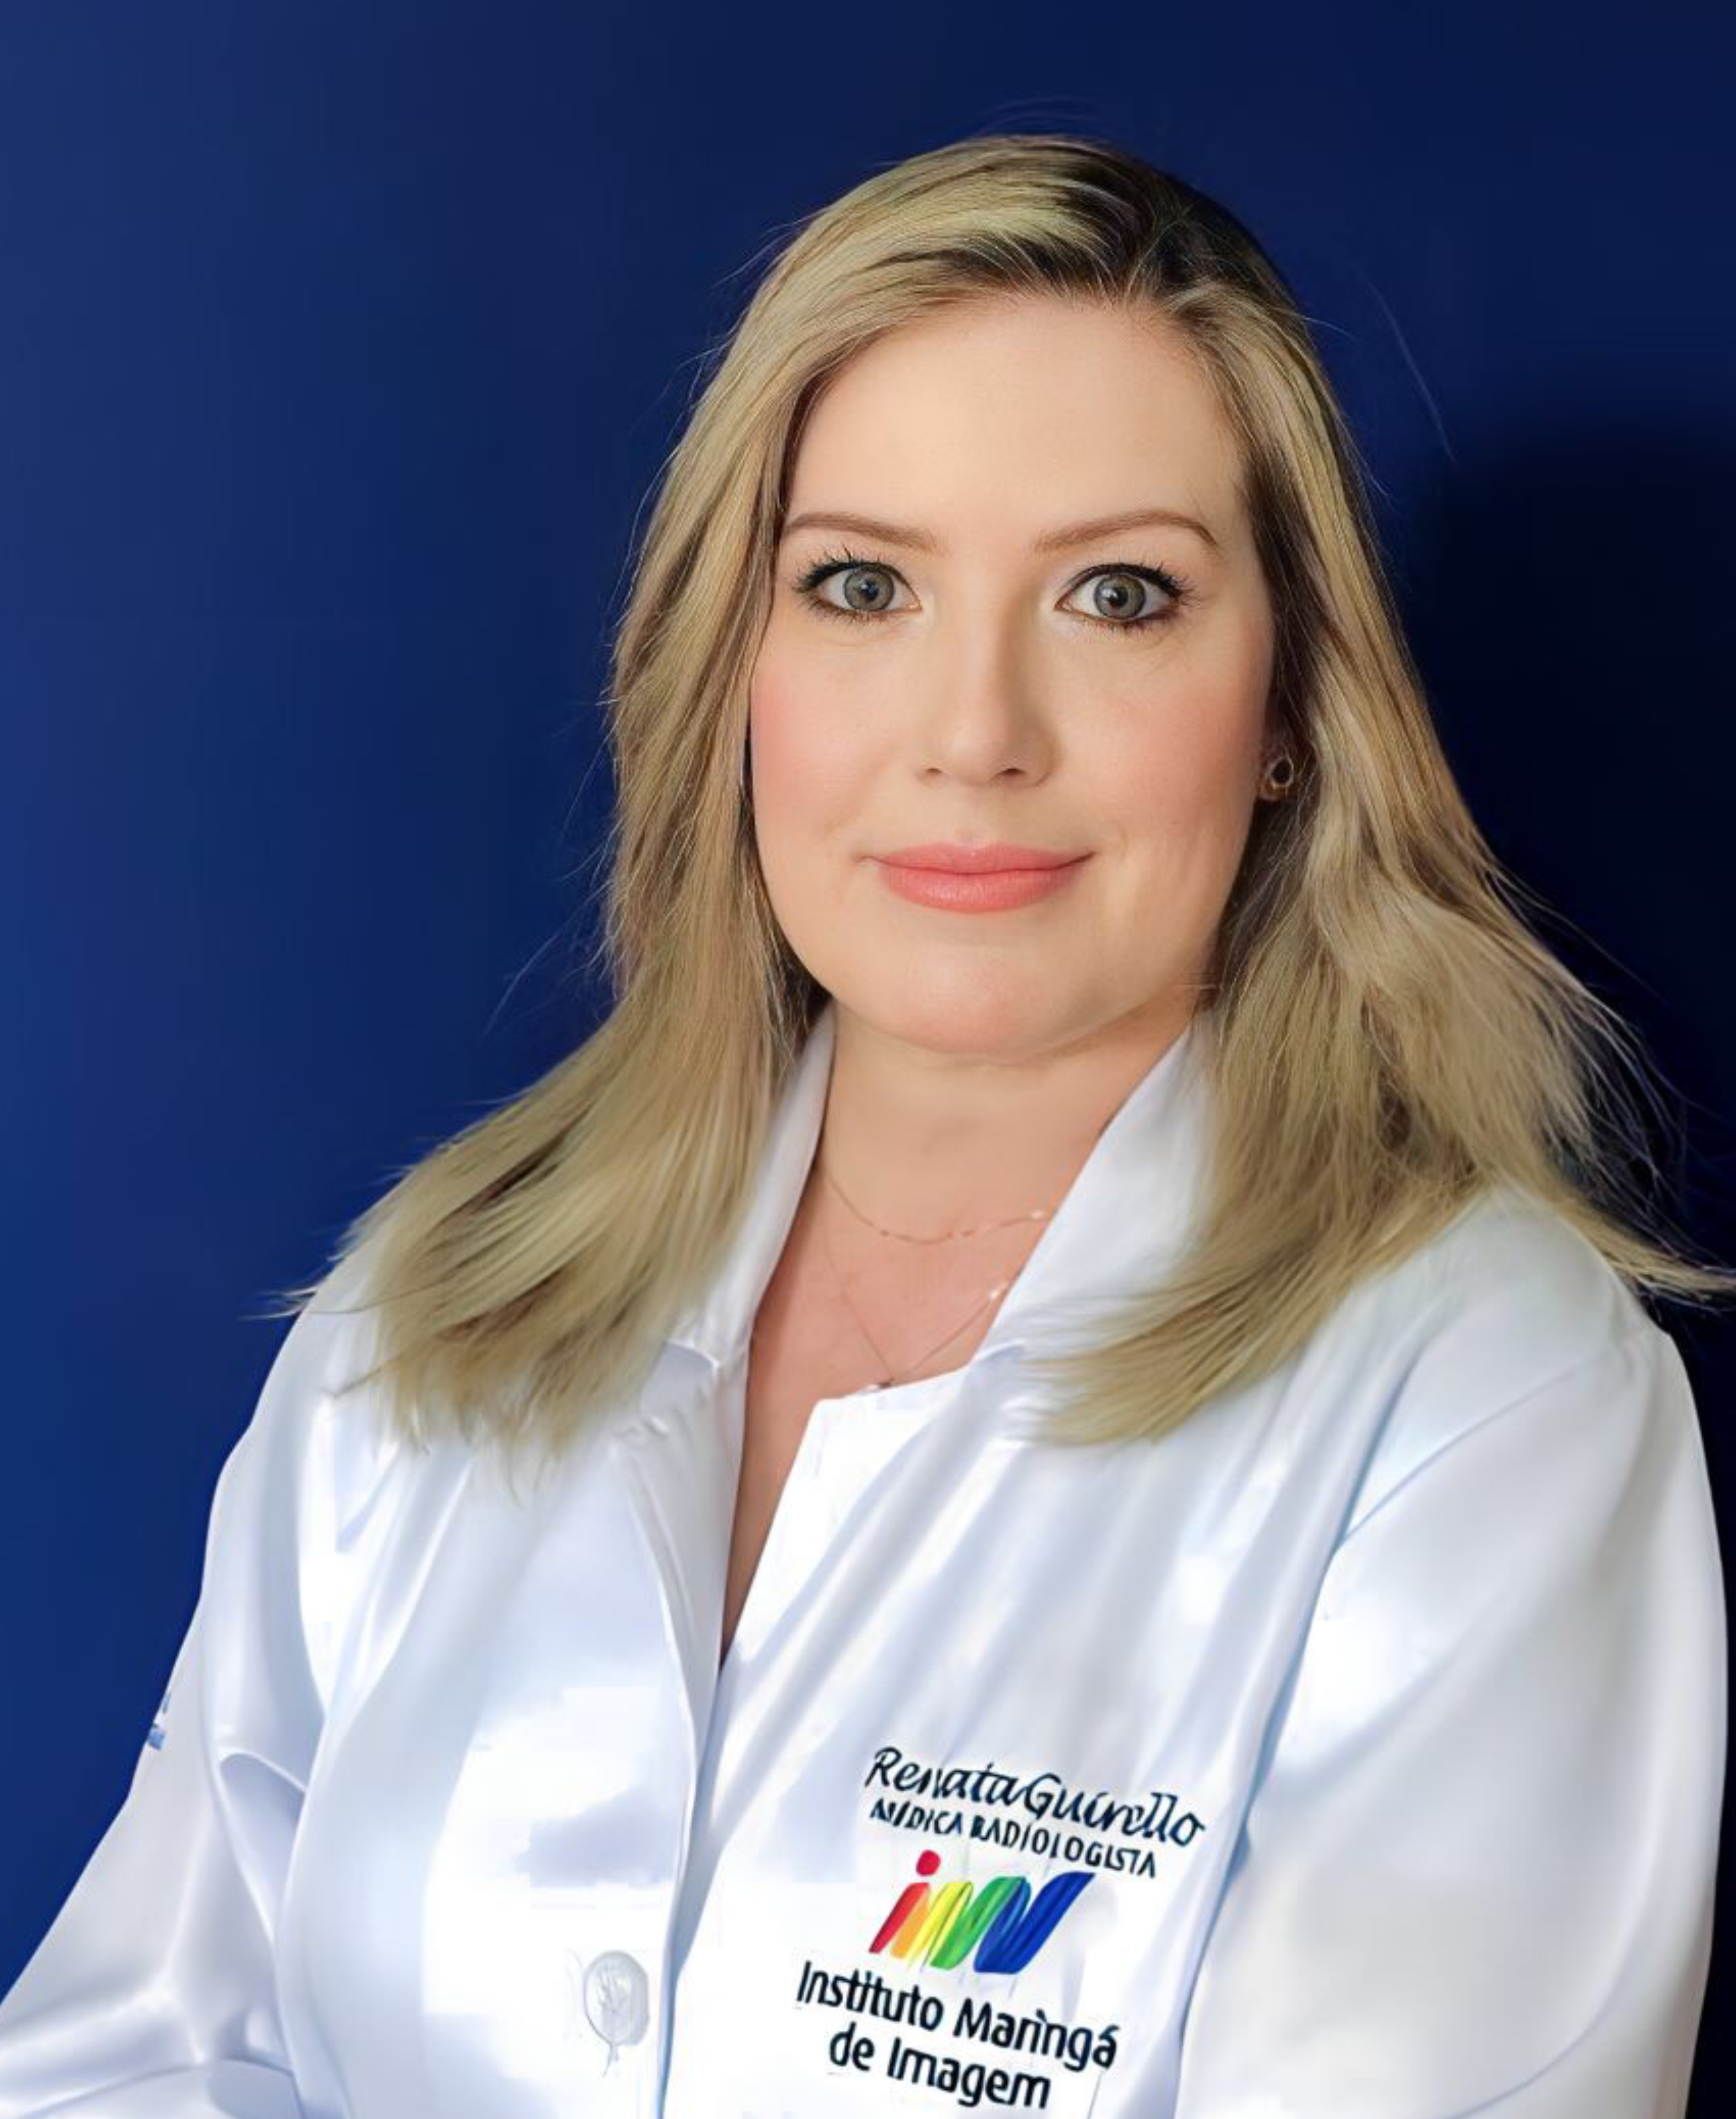 Dra. Renata Guirello